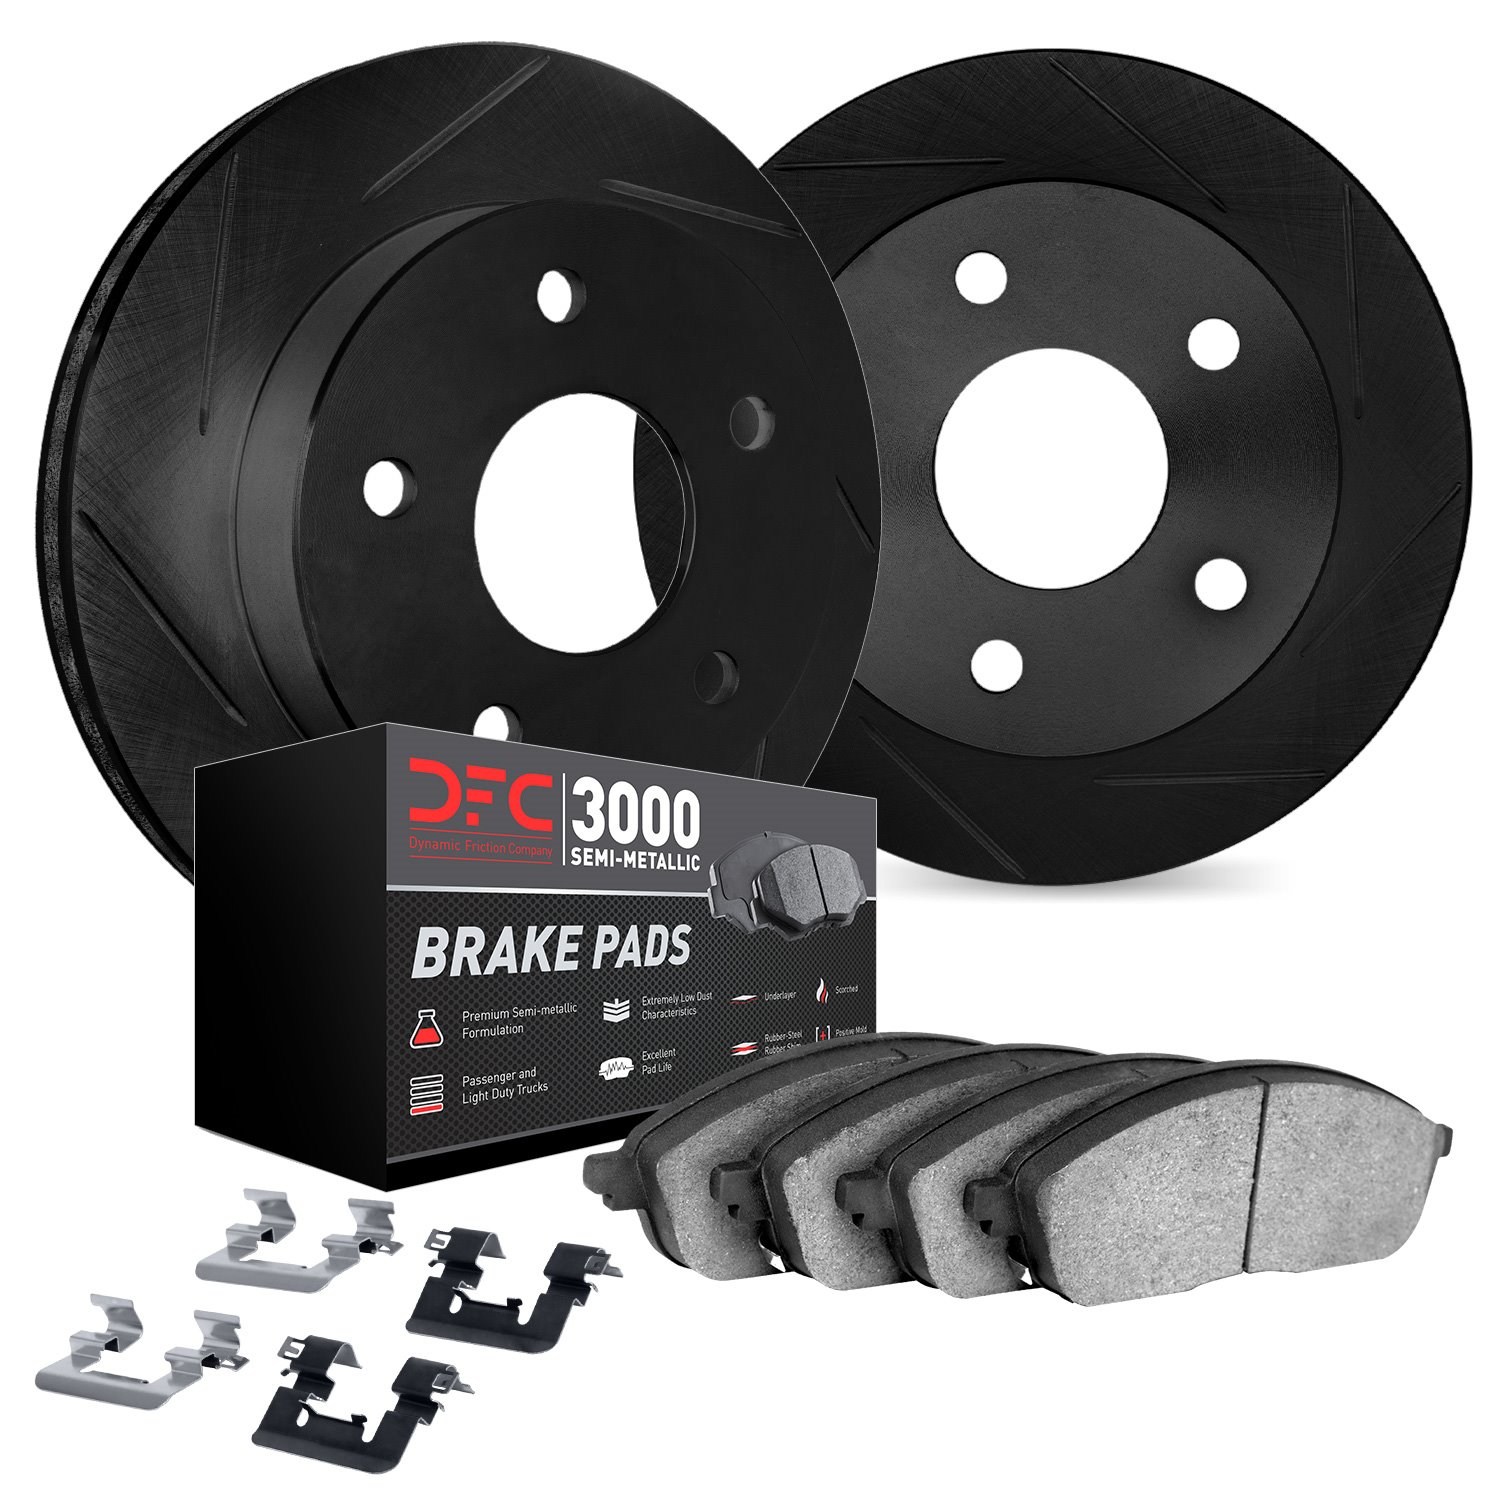 3112-31075 Slotted Brake Rotors with 3000-Series Semi-Metallic Brake Pads Kit & Hardware [Black], 2007-2019 BMW, Position: Rear